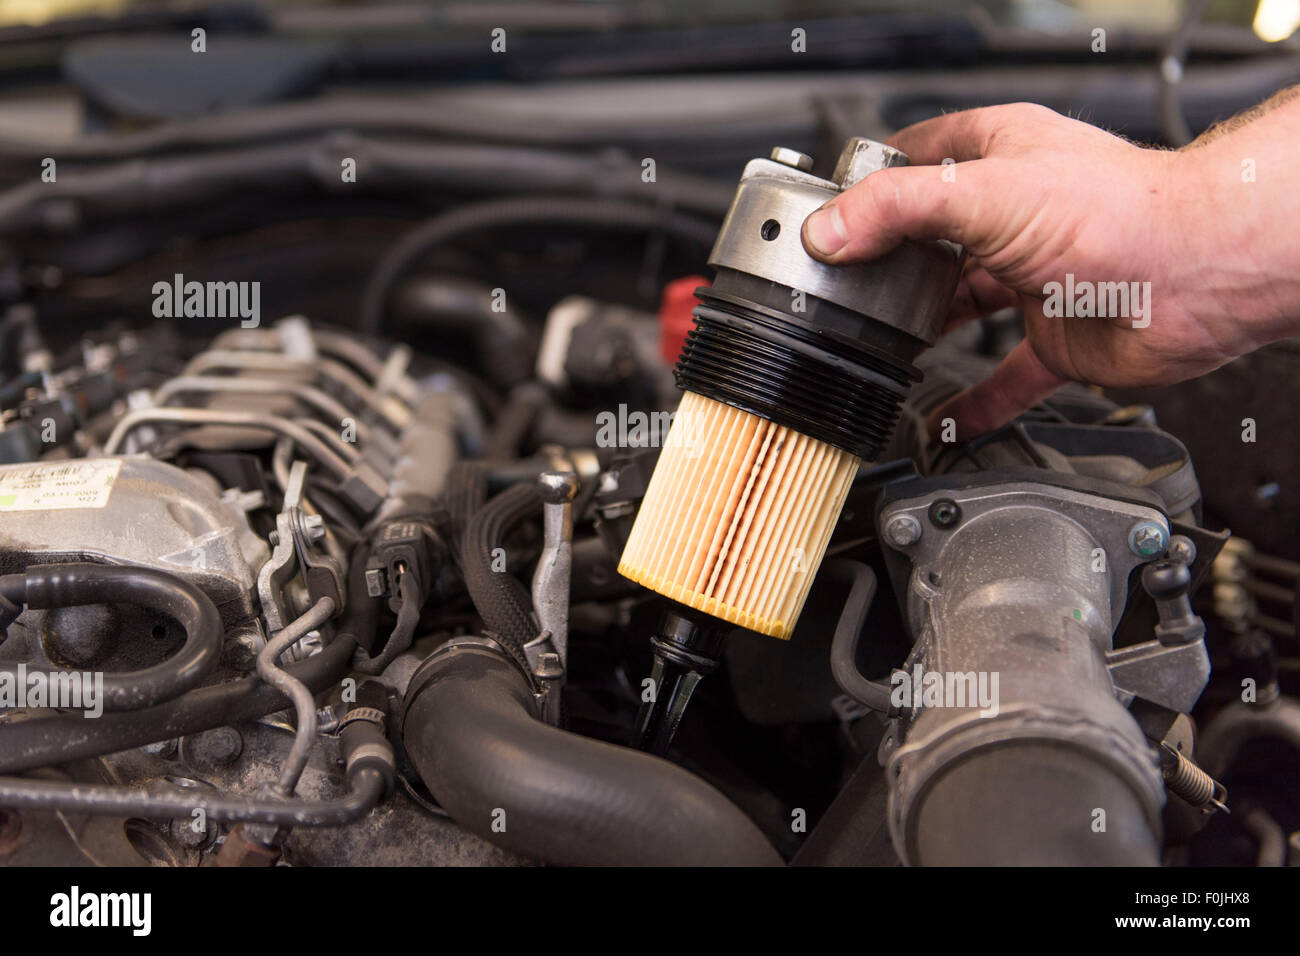 Kfz-Mechaniker passt einen neuen Ölfilter, ein Auto bei der routinemäßigen Wartung. Stockfoto